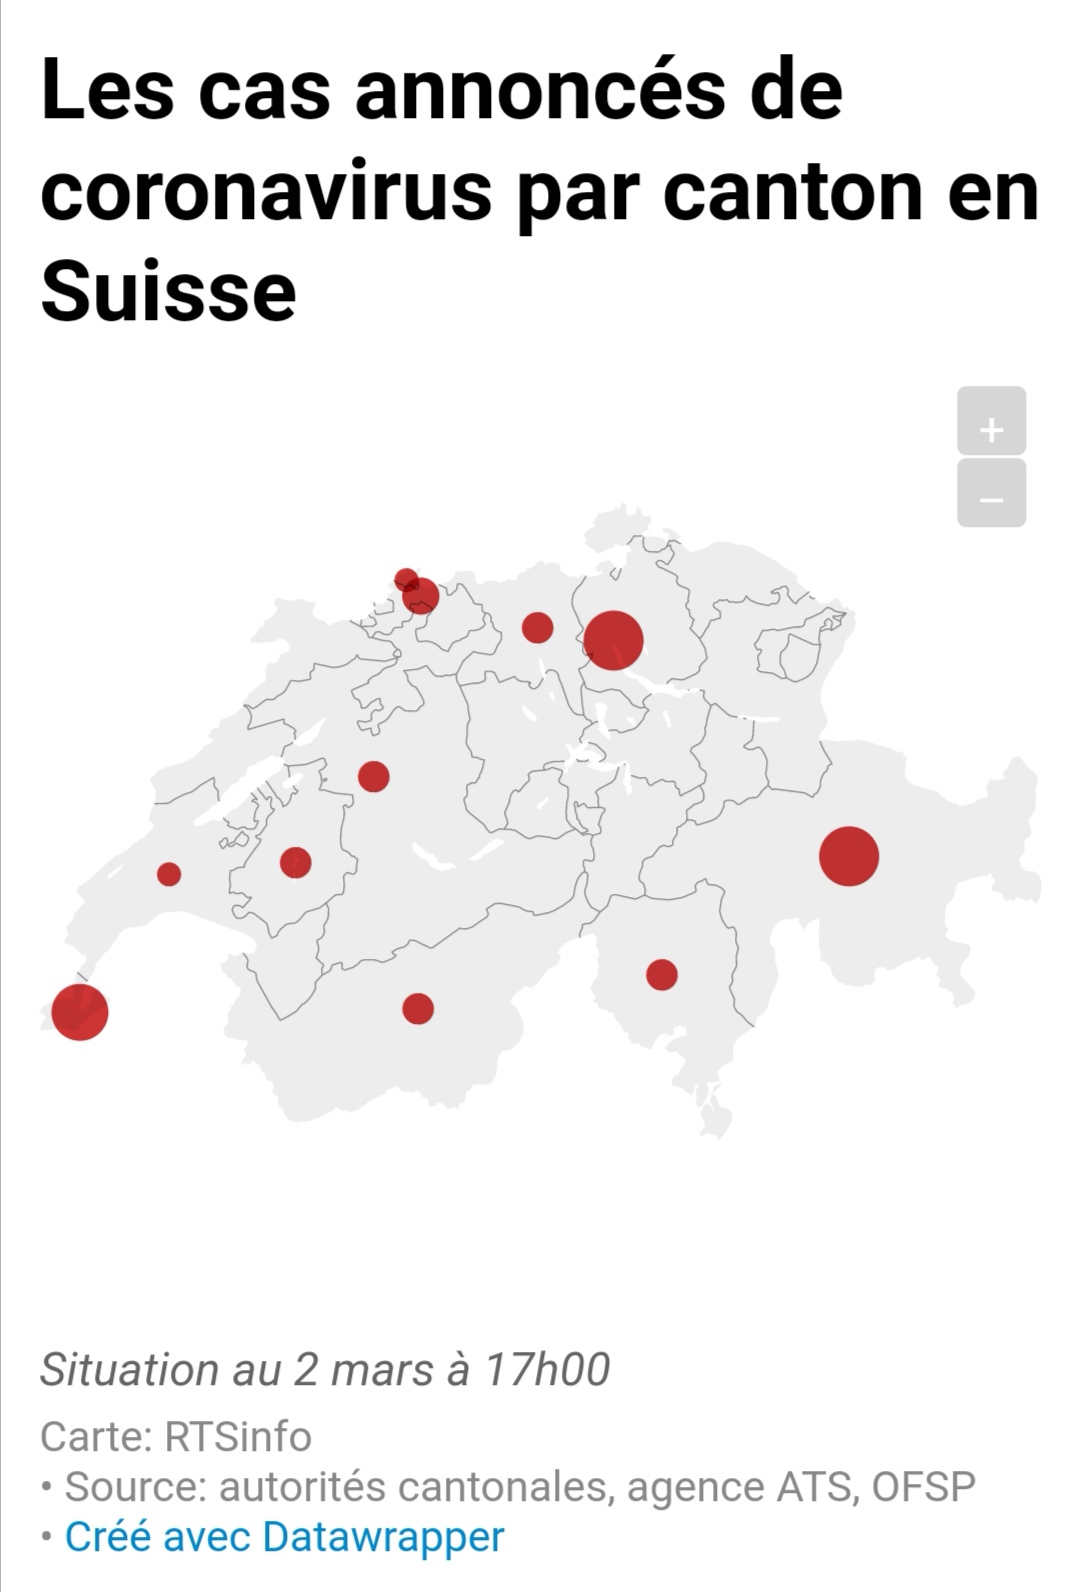 瑞士新冠肺炎病例增至38例